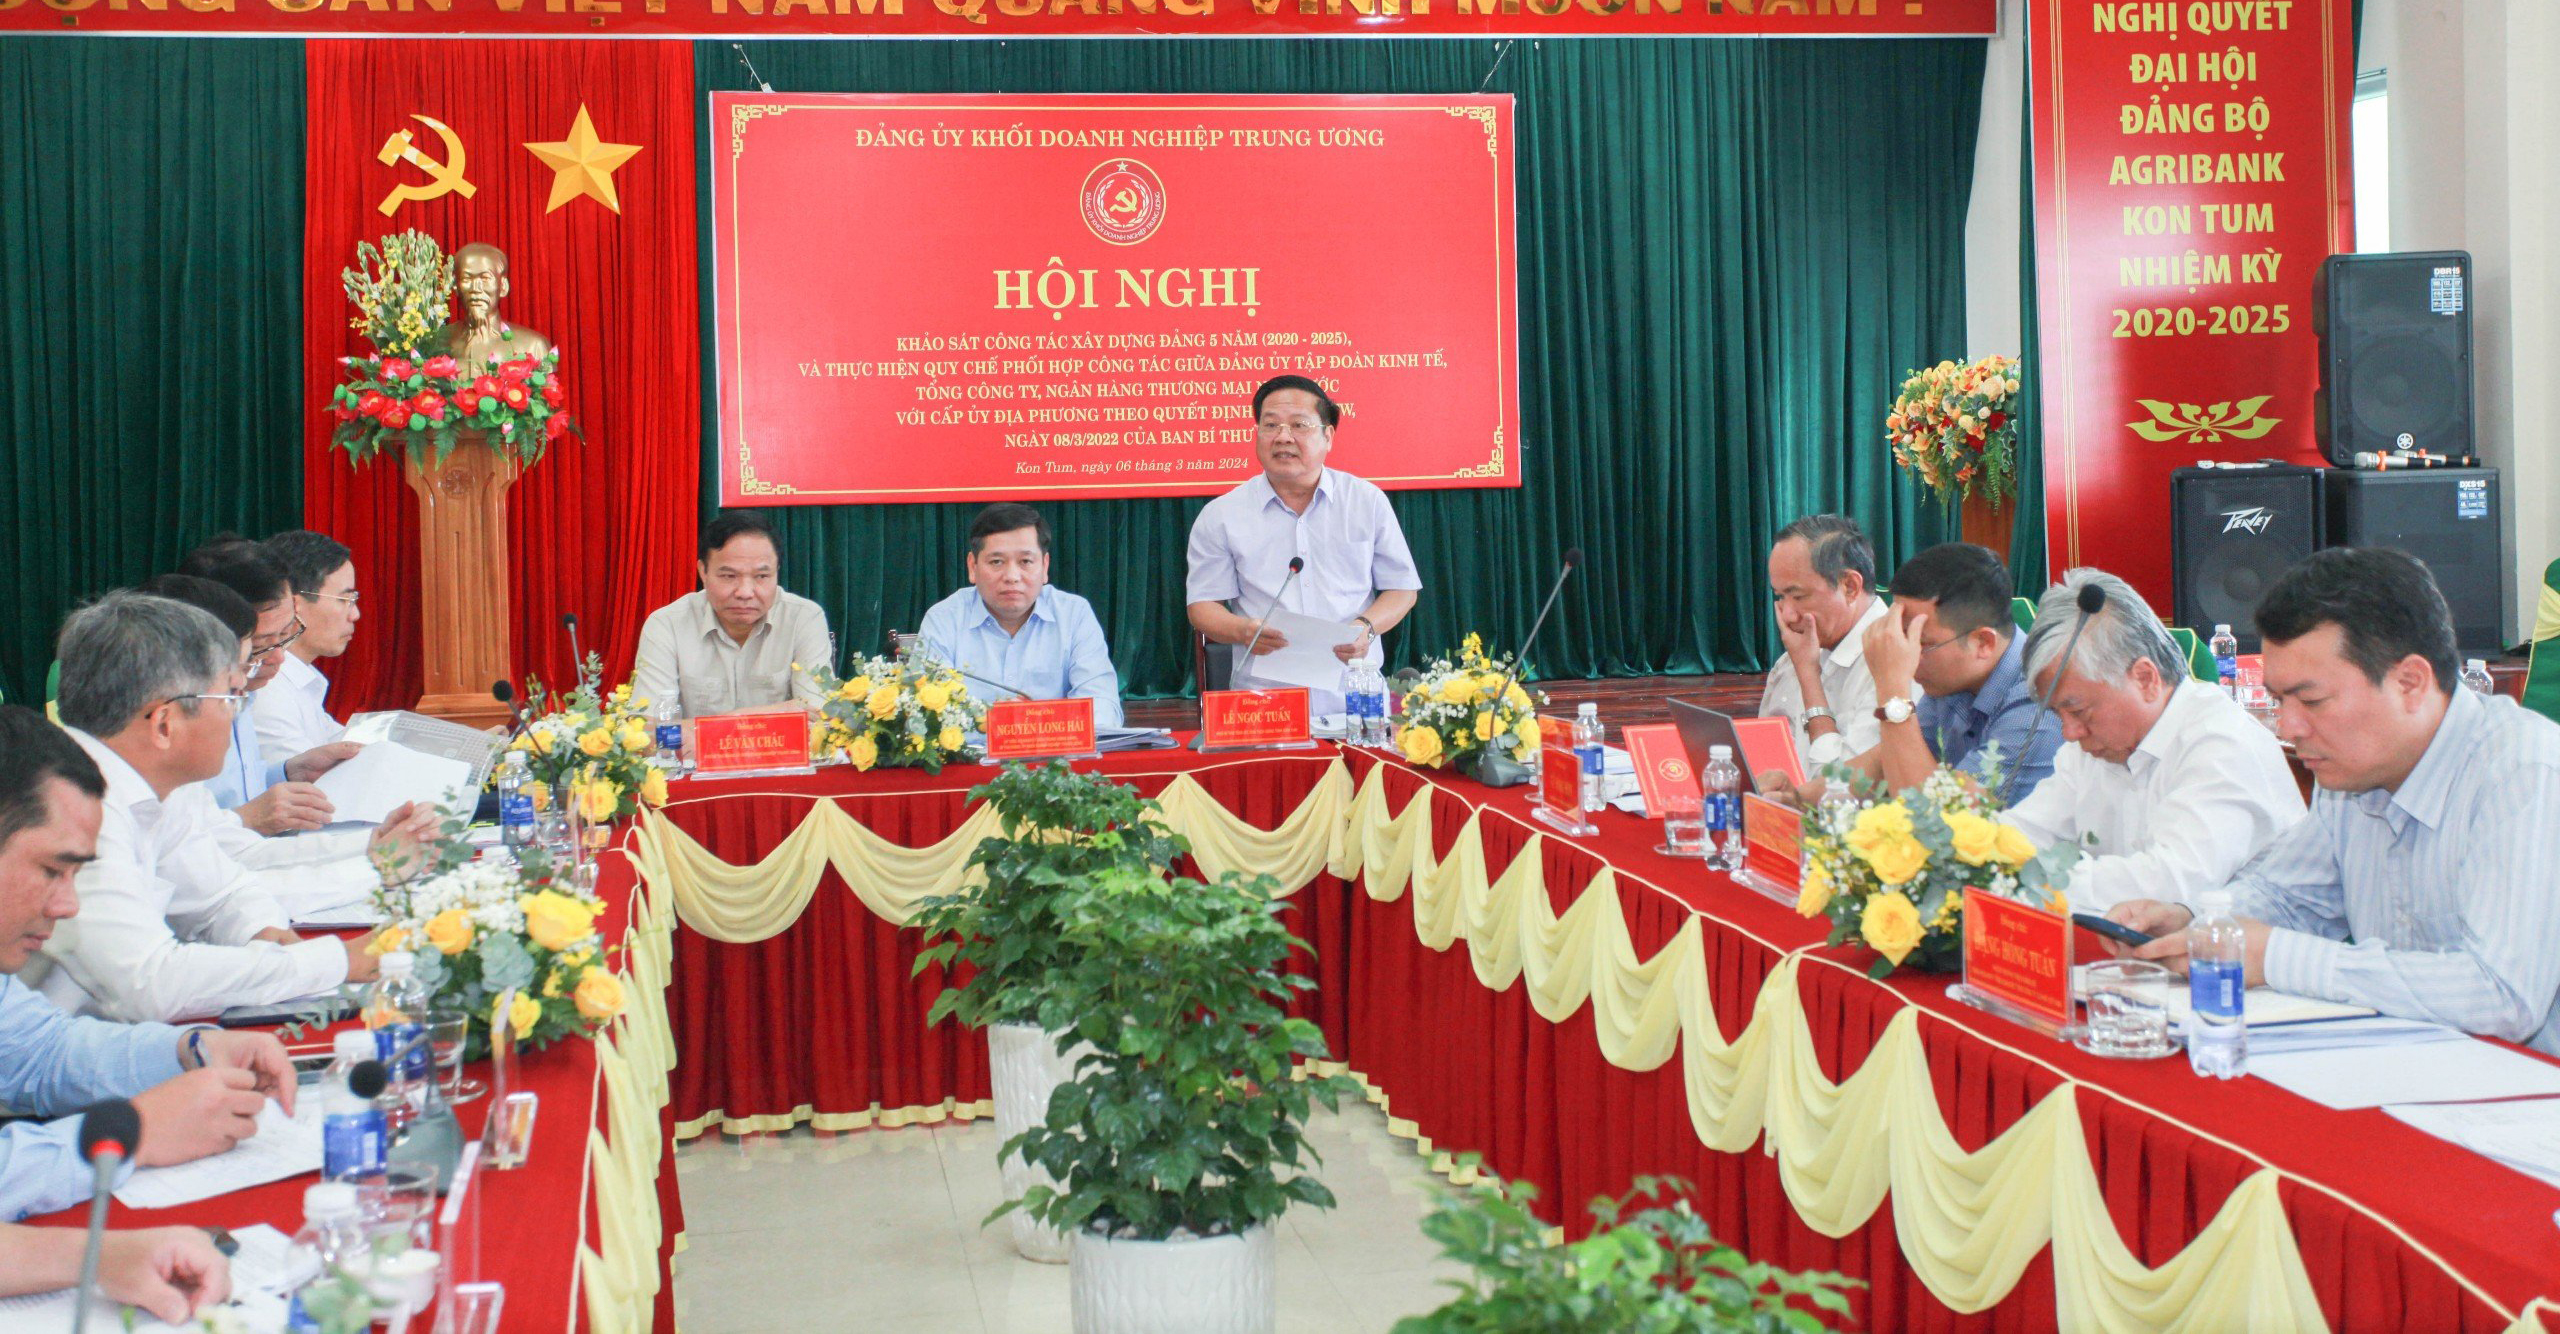 Chủ tịch UBND tỉnh Kon Tum Lê Ngọc Tuấn phát biểu tại Hội nghị.